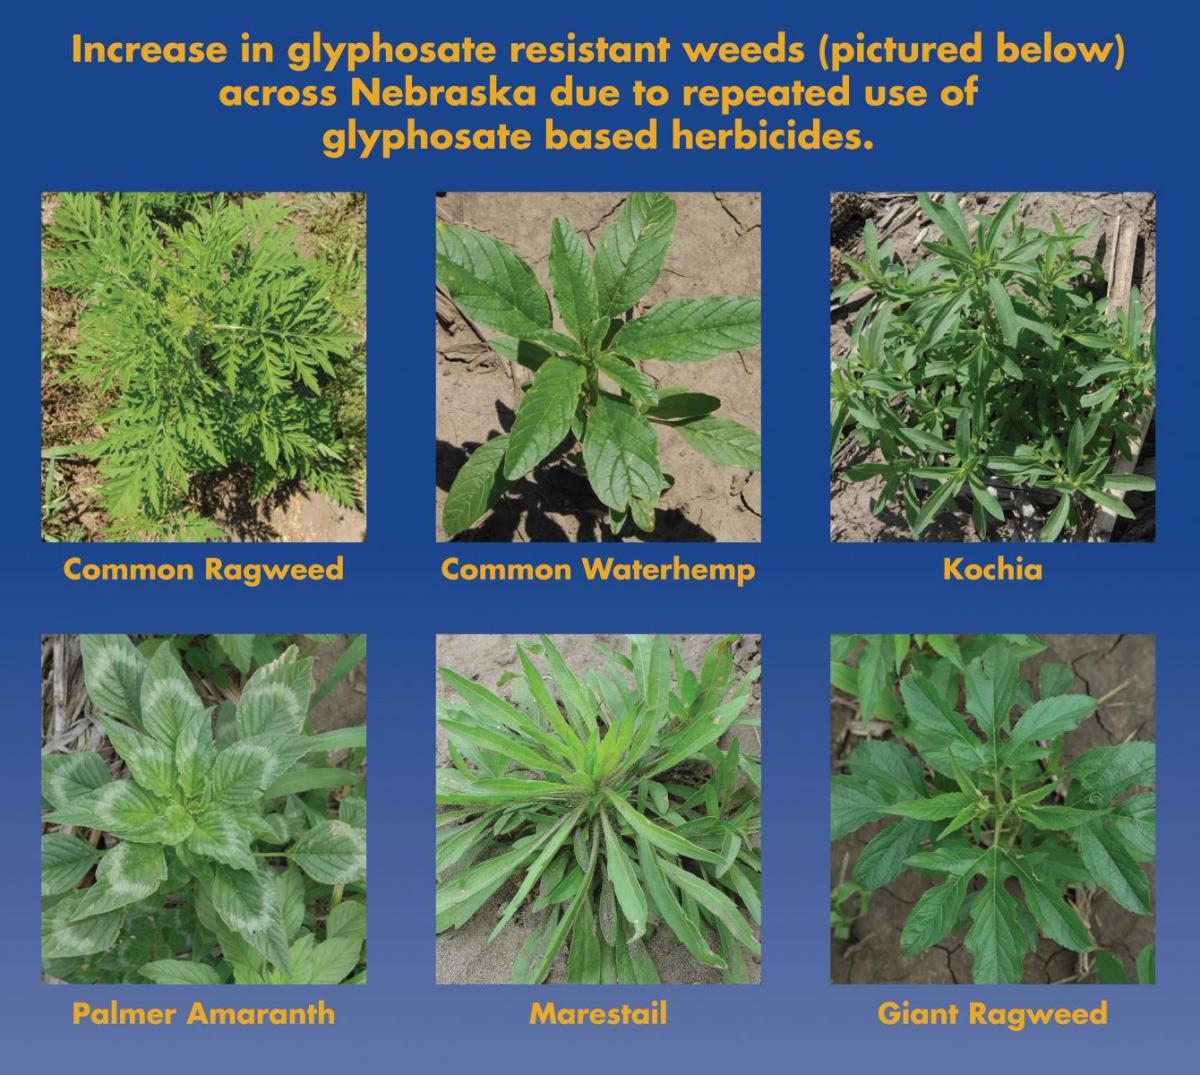 Six pesticide-resistant weeds found in Nebraska